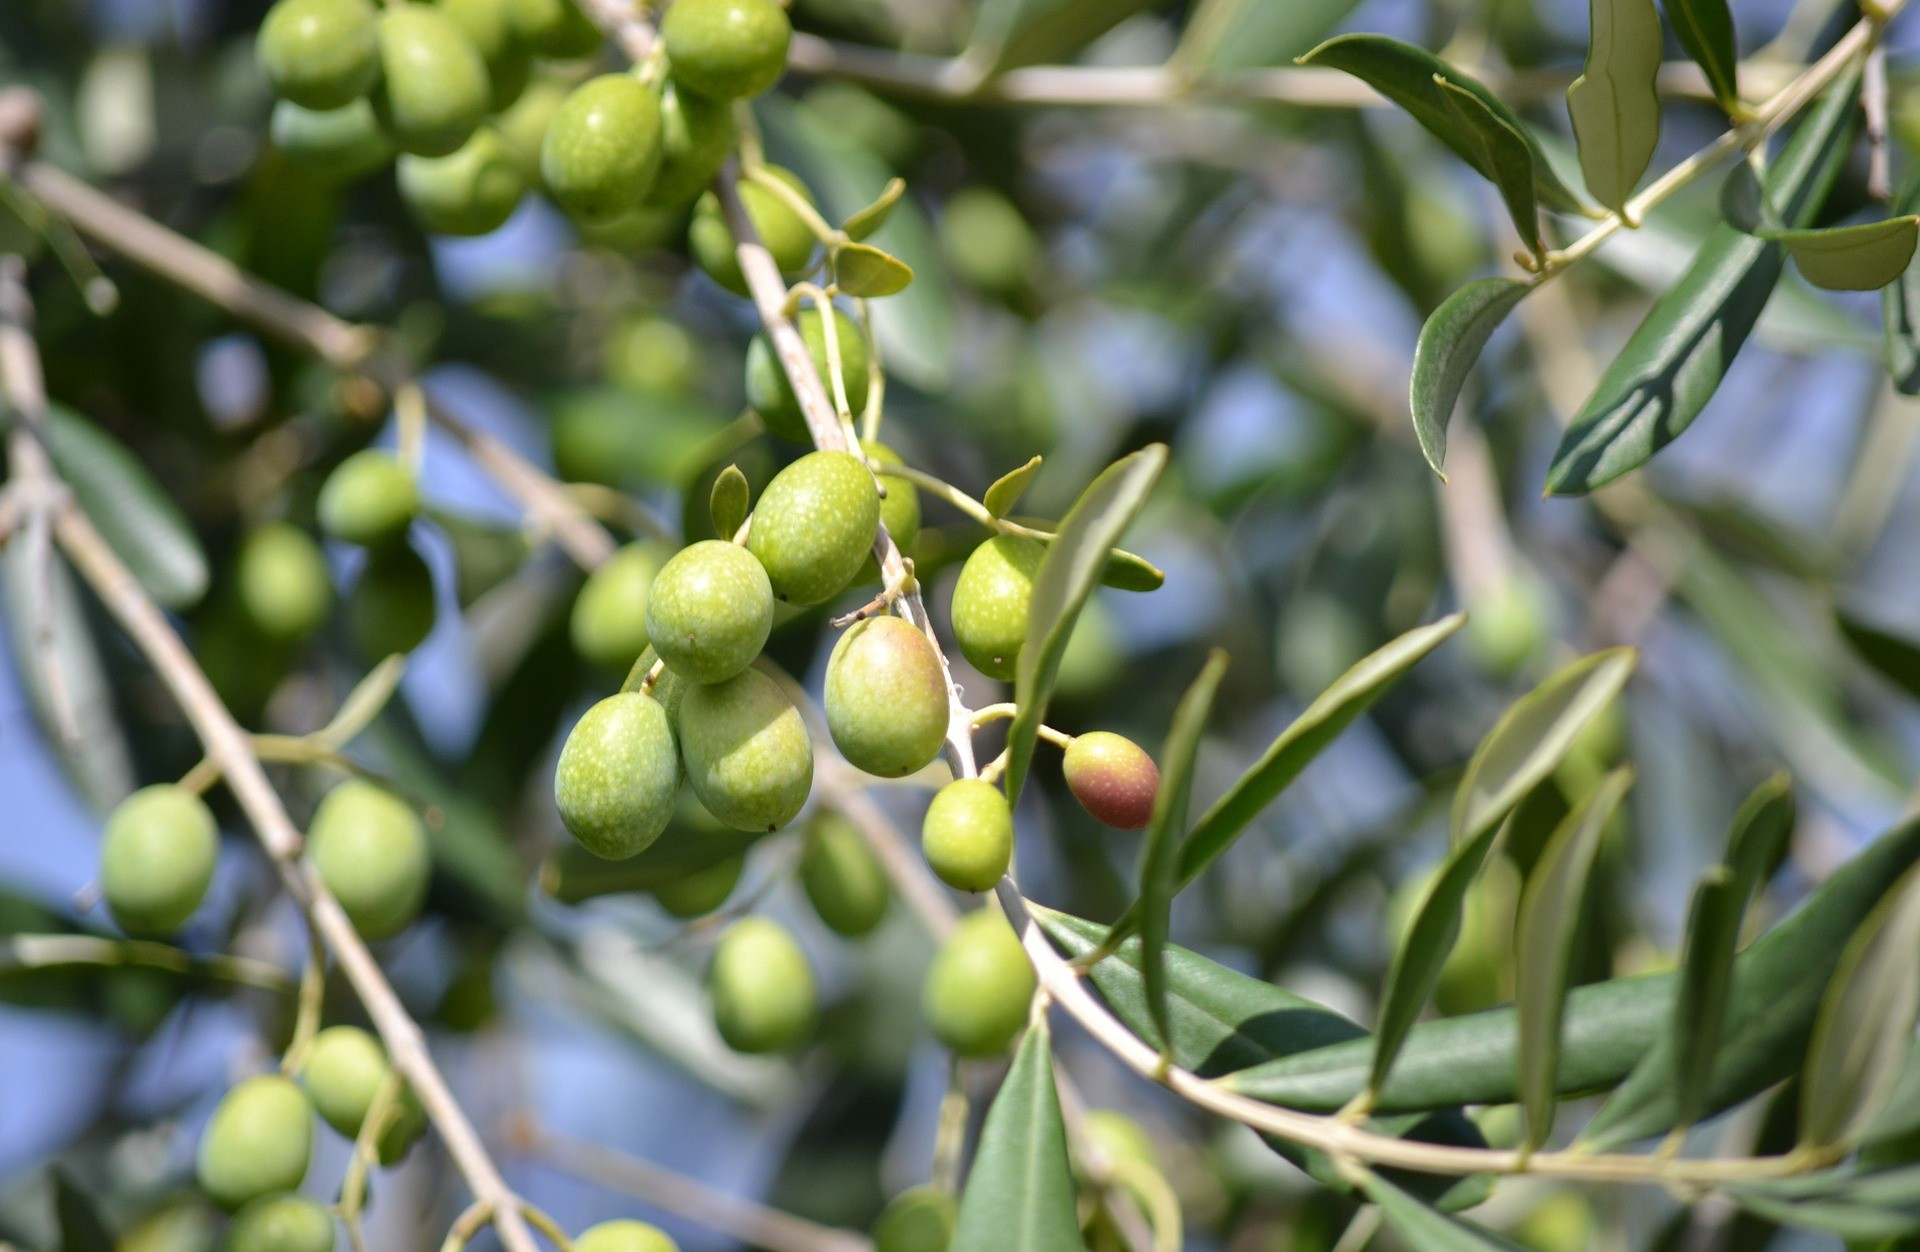 Itinerari gourmet: a Trevi raccolta delle olive e cava del tartufo